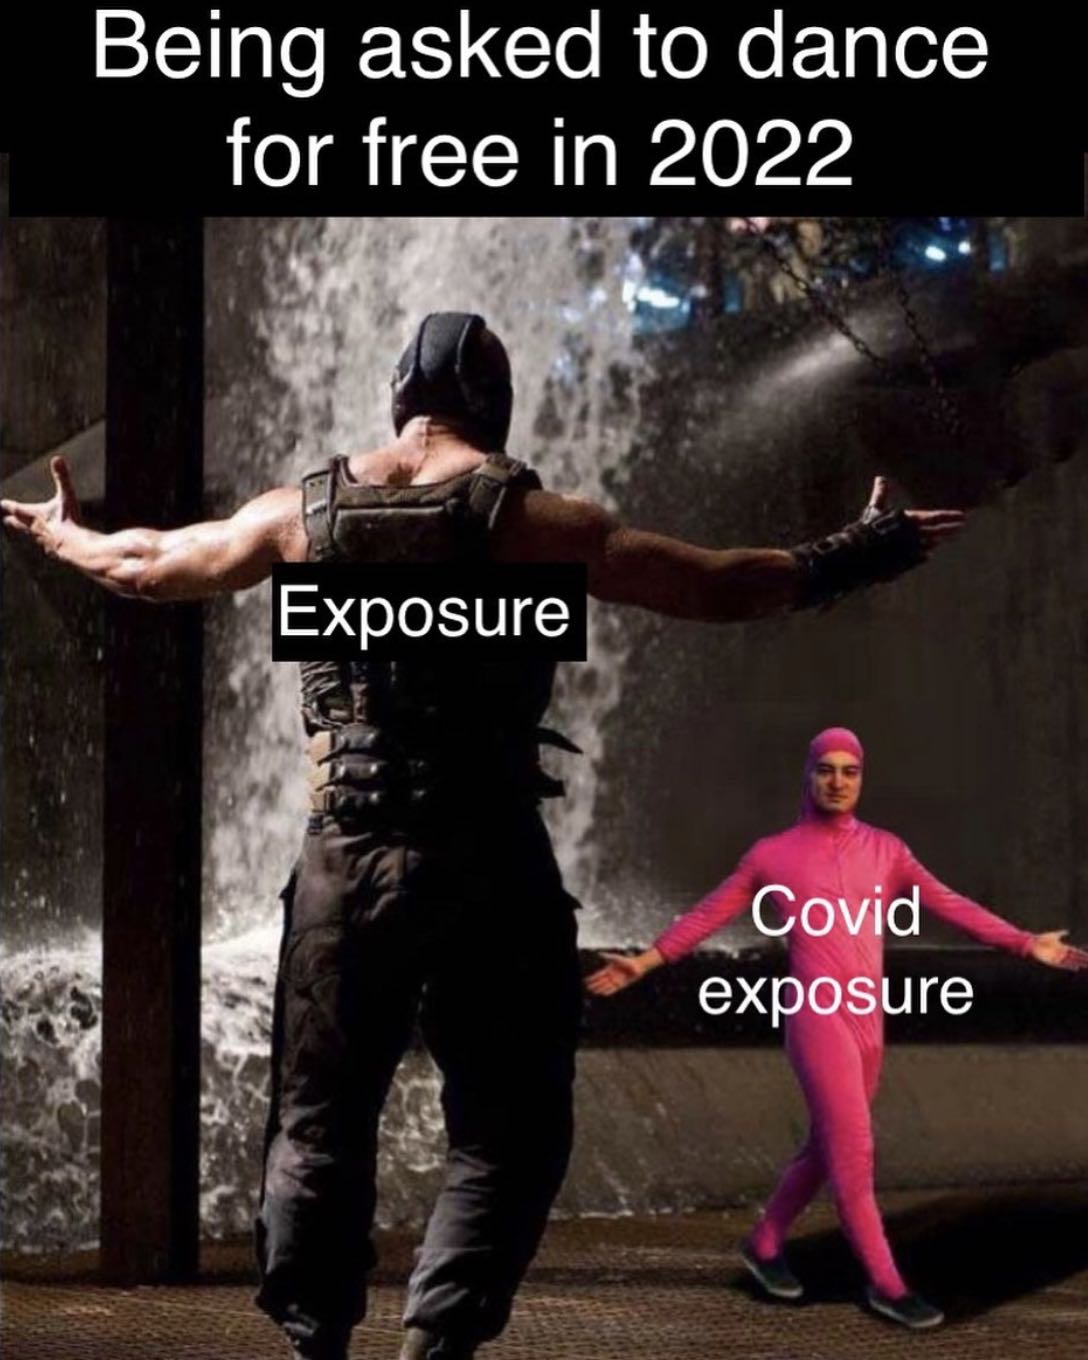 Bane vs pink guy dancing meme of exposure vs covid exposure for dancers in 2022